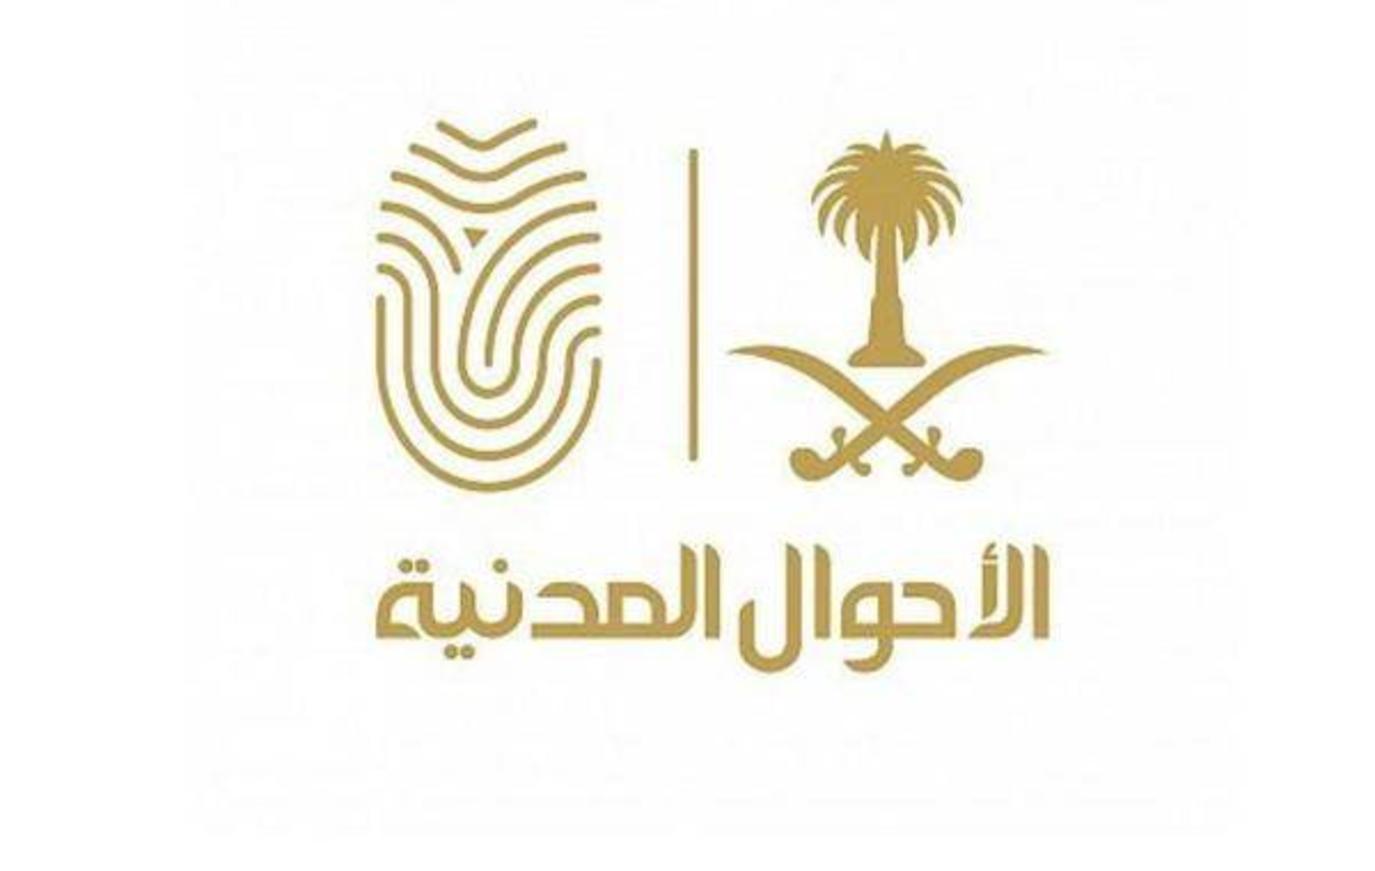 الأحوال المدنية تتيح خدمة تعديل الاسم باللغة الإنجليزية للسعوديين | مجلة  سيدتي